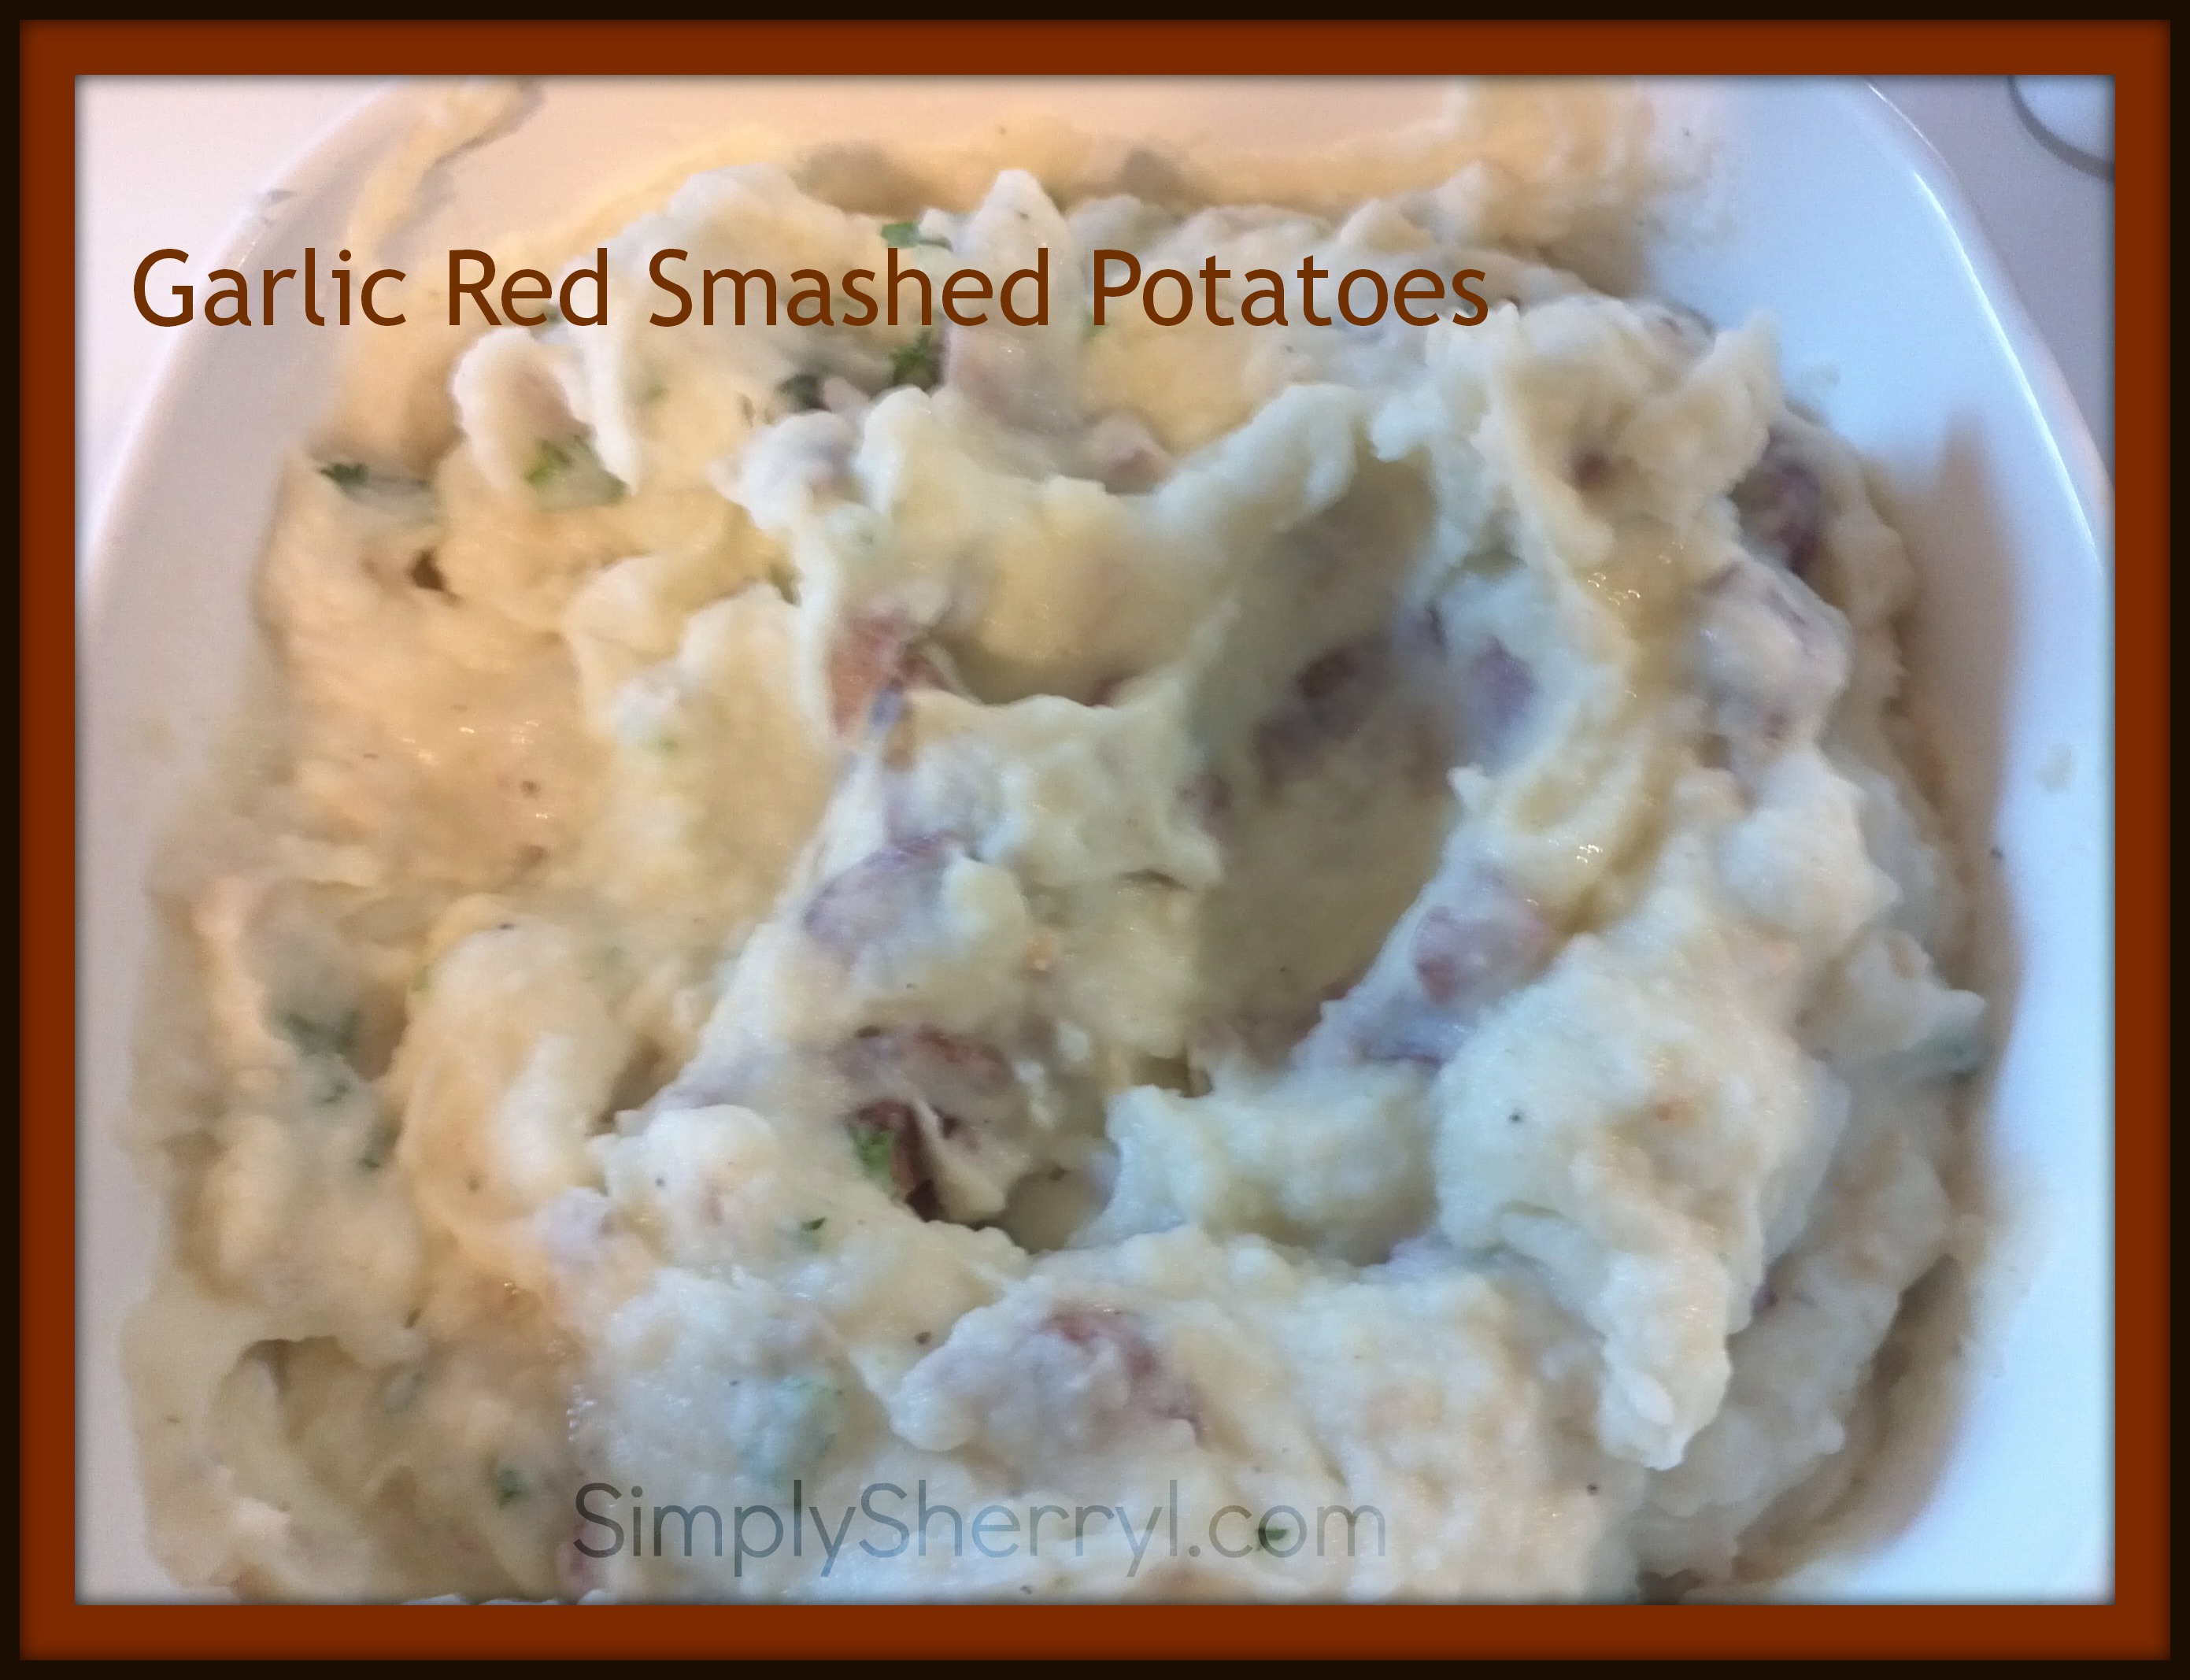 Smashed Red Garlic Potatoes